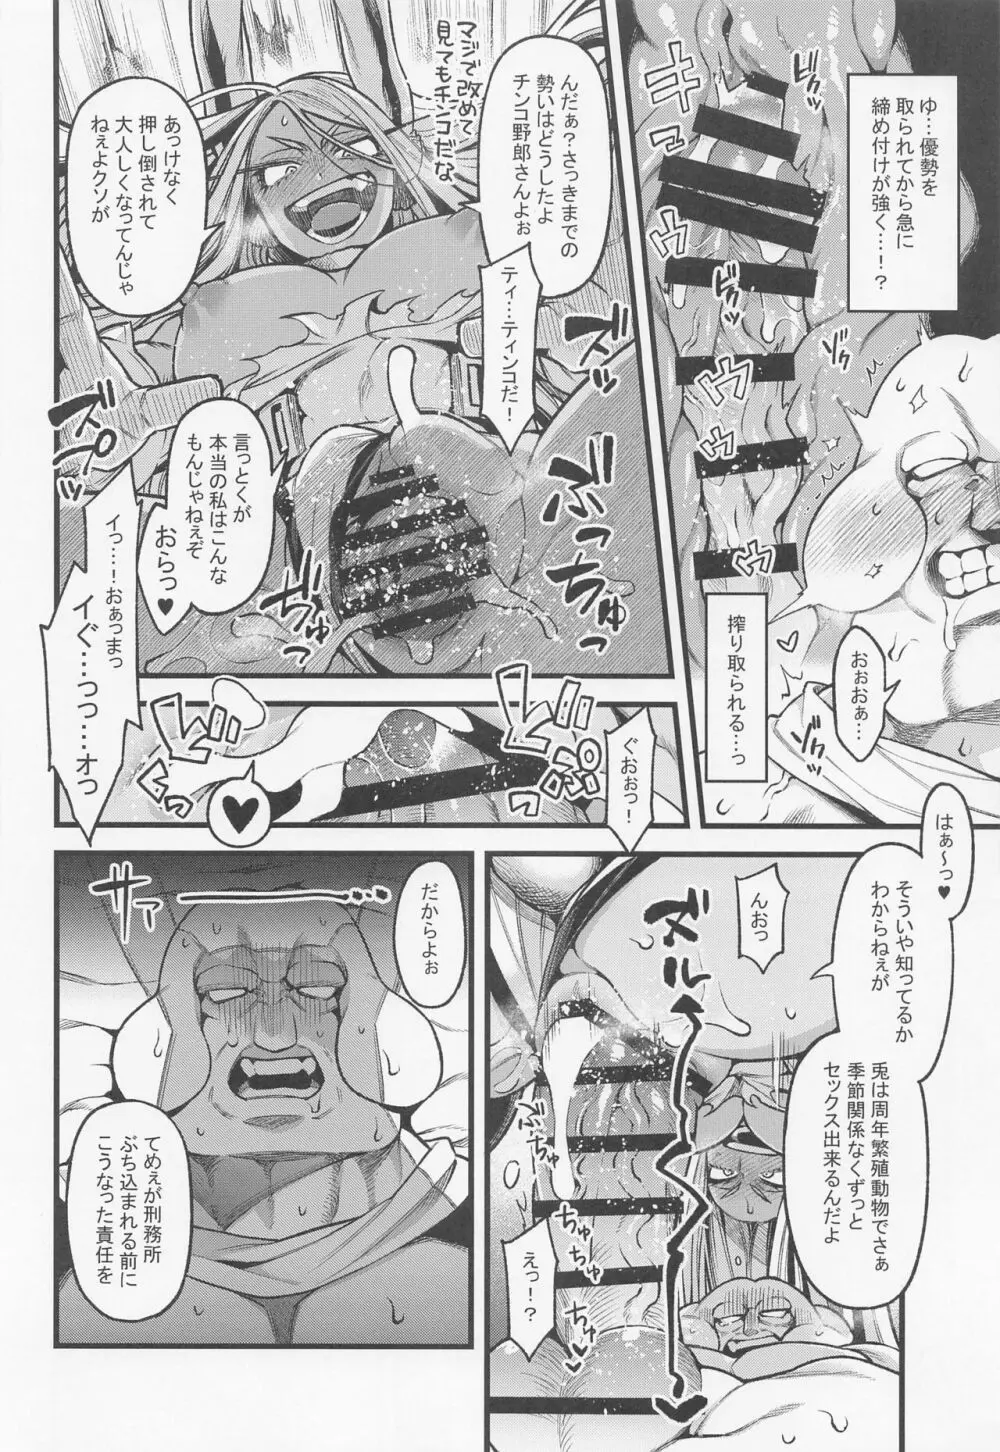 がんばれ!!ラビットヒーロー!!! - page13